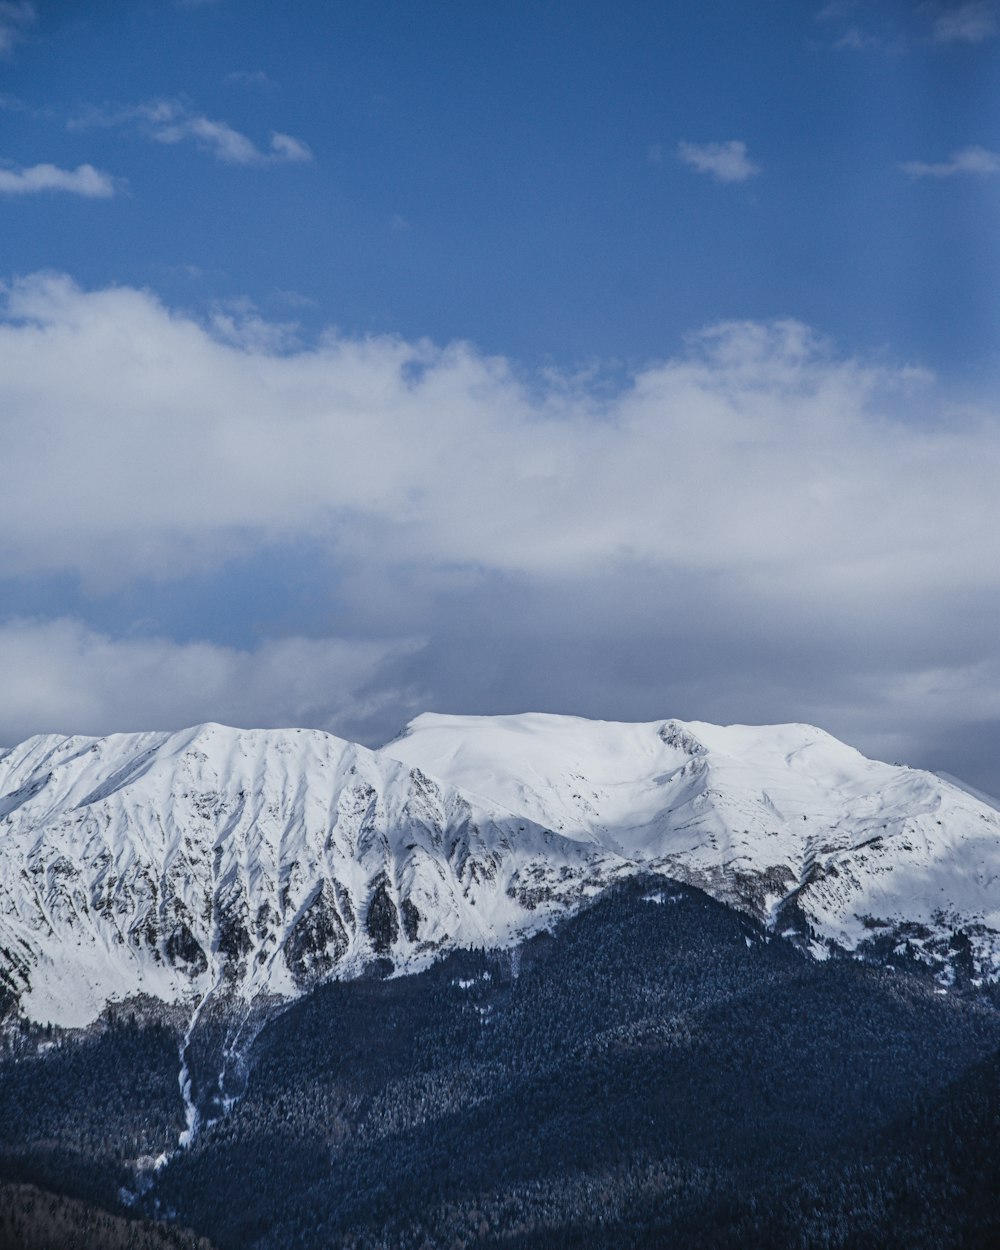 Photographie aérienne du sommet d’une montagne recouverte de neige sous un ciel blanc et bleu